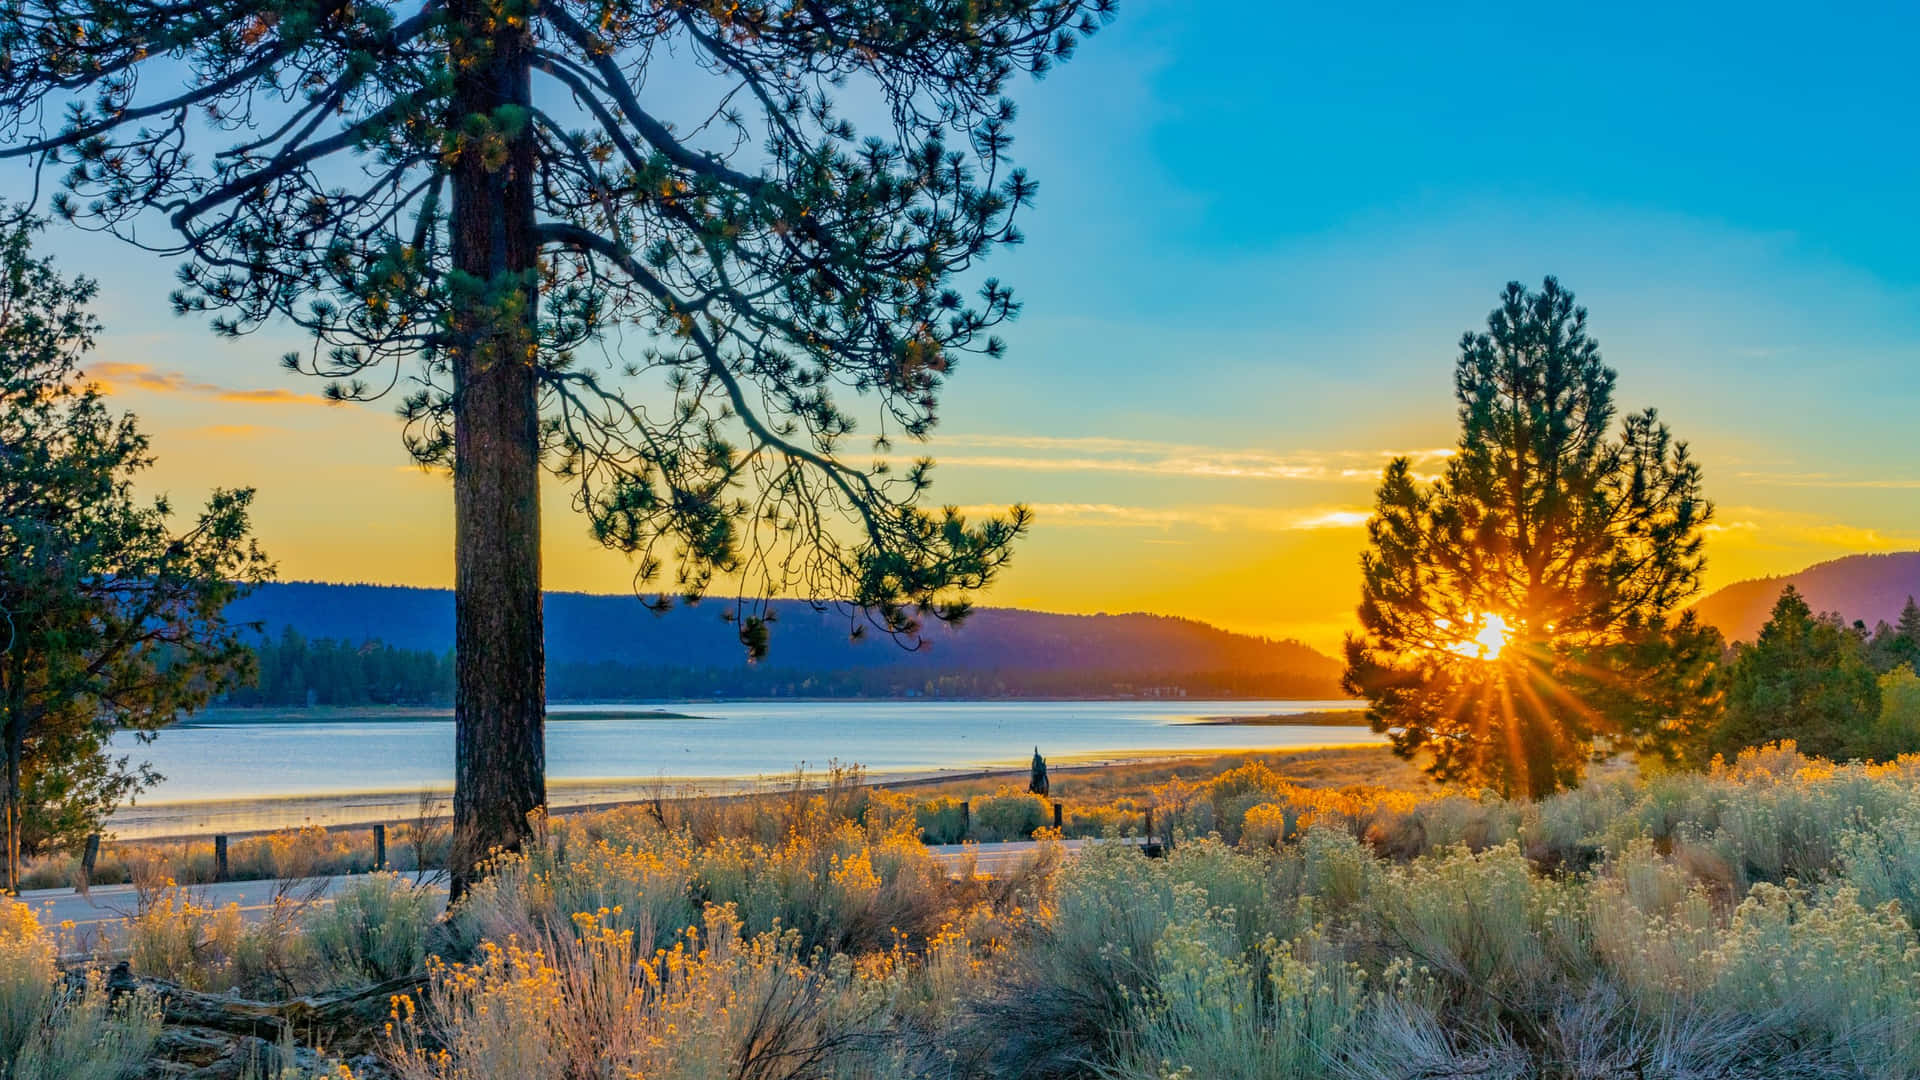 San Bernardino Sunset Lake View Wallpaper